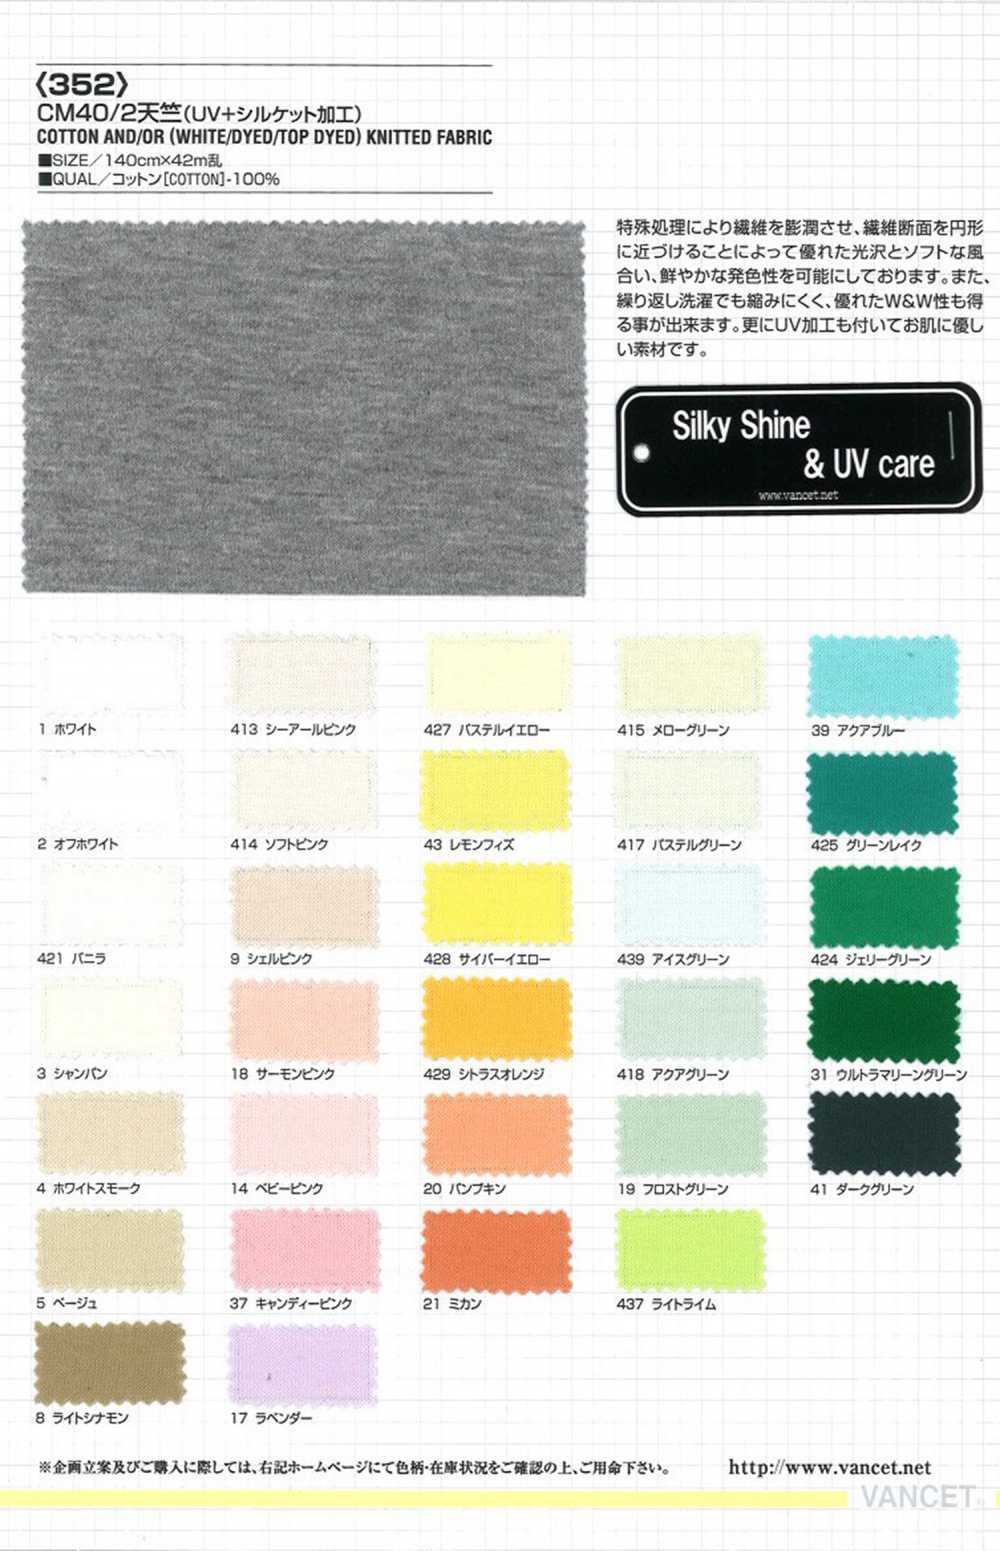 352 CM40/2 Cotton Jersey (UV Mercerized)[Textile / Fabric] VANCET